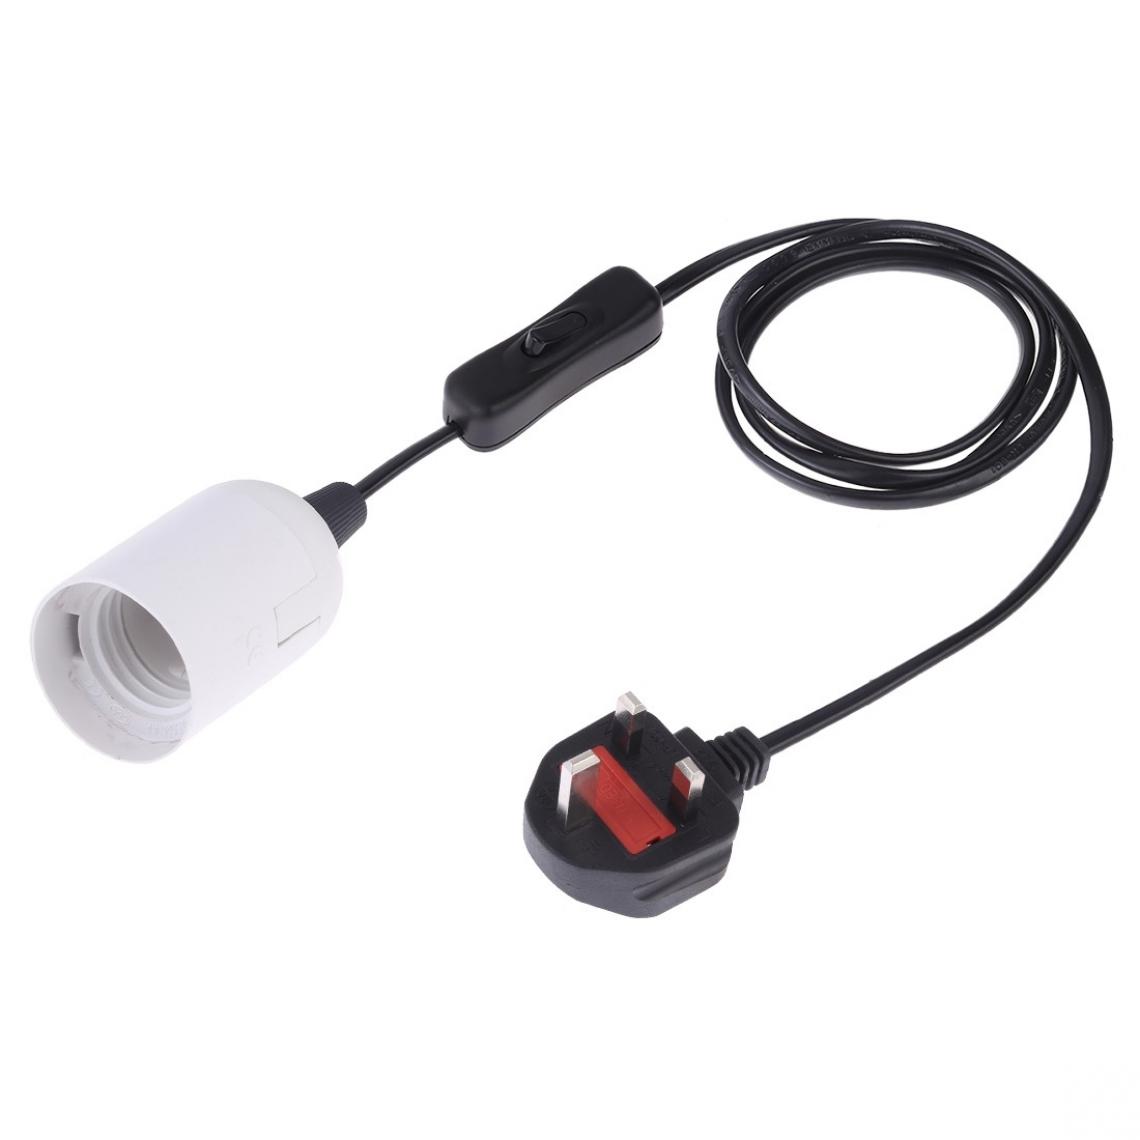 Wewoo - E27 Wire Cap Switch Support de lampe Chandelier Prise de courant avec rallonge de 1,5 mGrande anglaise Blanc - Douilles électriques